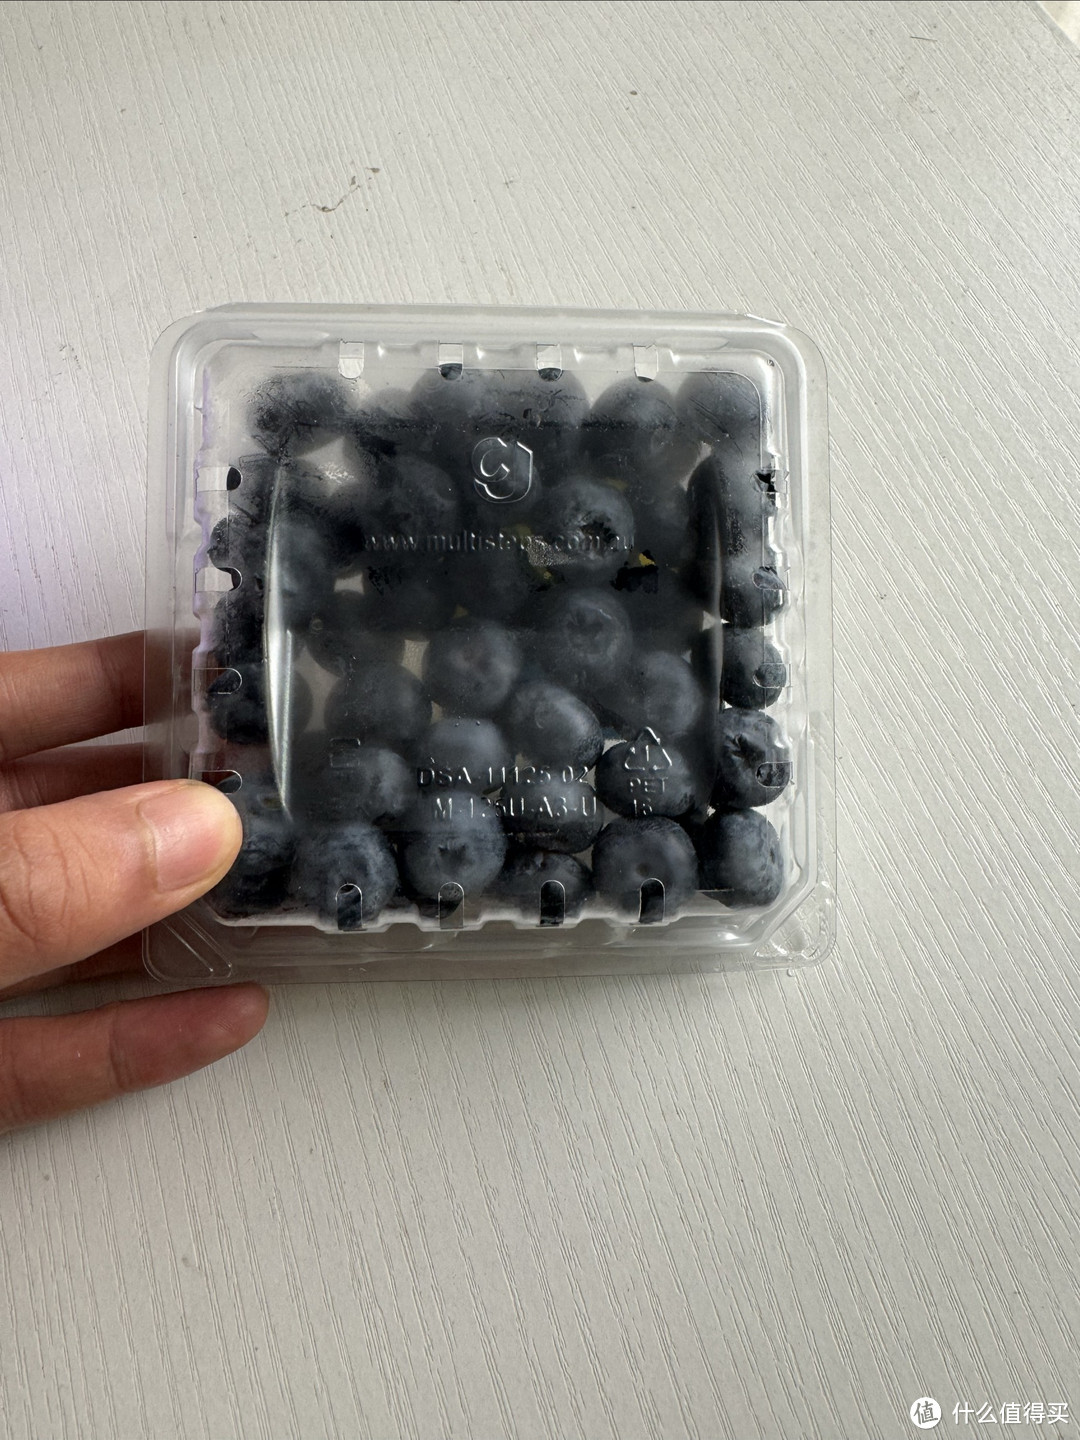 春日办公零食常备-怡颗莓蓝莓、